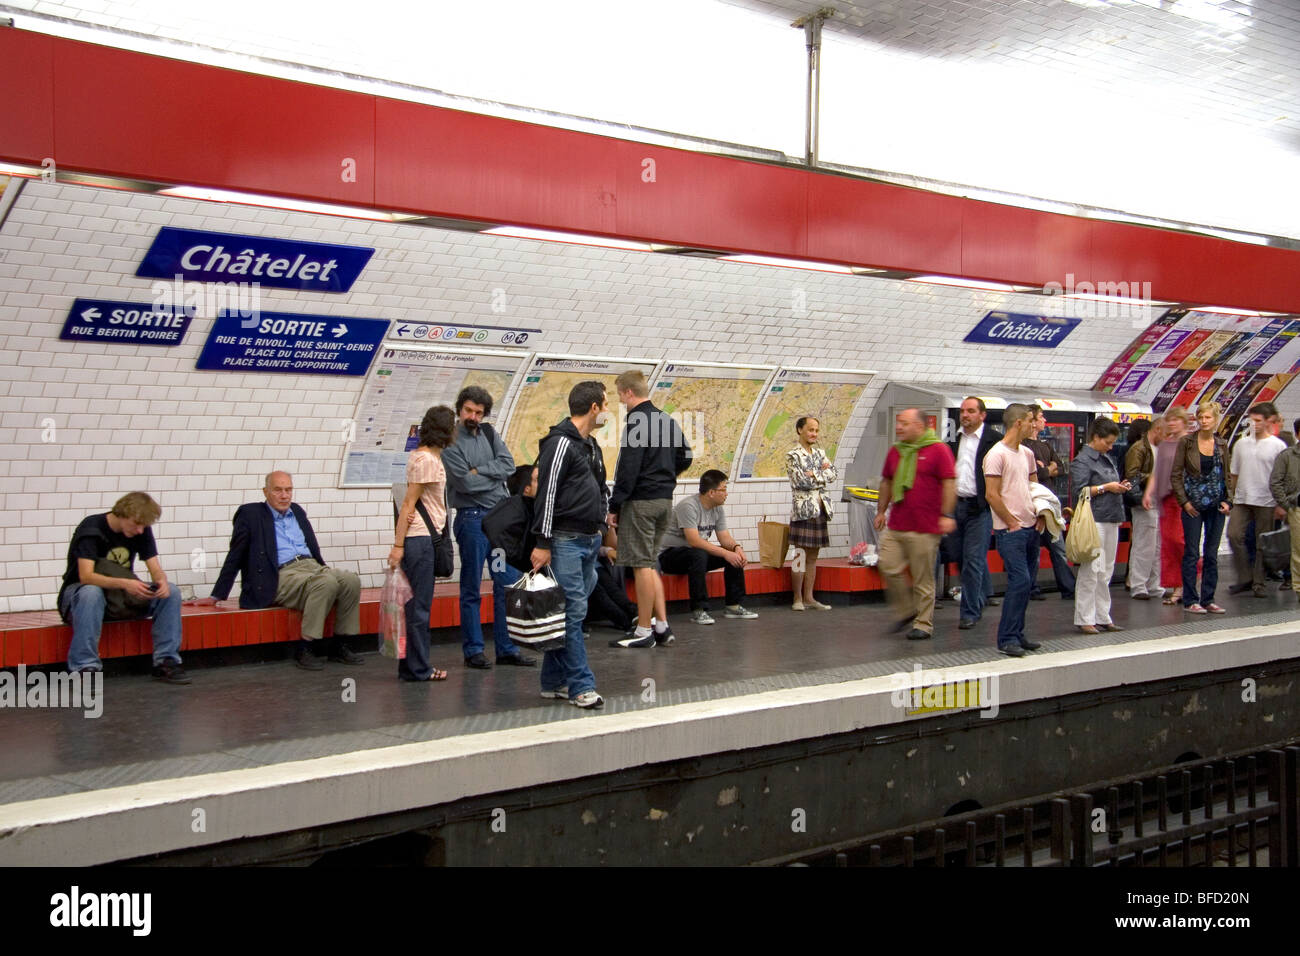 Les gens attendent sur le quai de métro de la station de métro Châtelet Paris à Paris, France. Banque D'Images